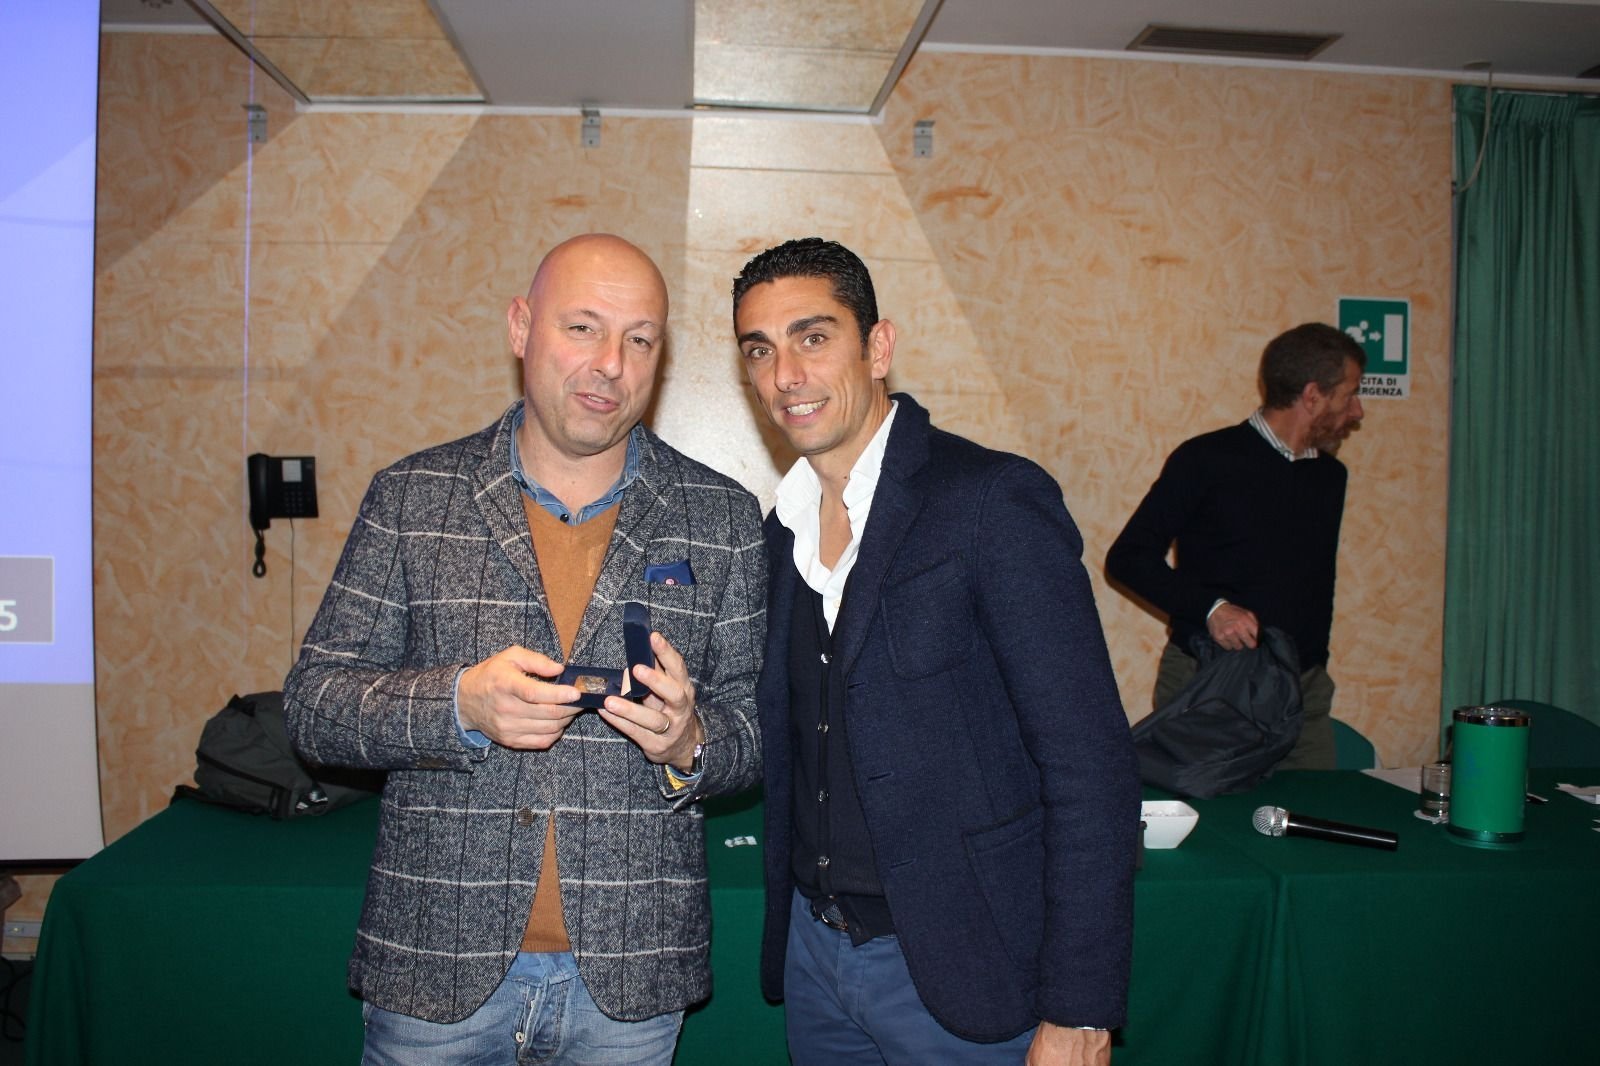 Mister Moreno Longo premia Fabio Nobili, miglior allenatore del 2014. Stefano Lovisolo votato per il 2015